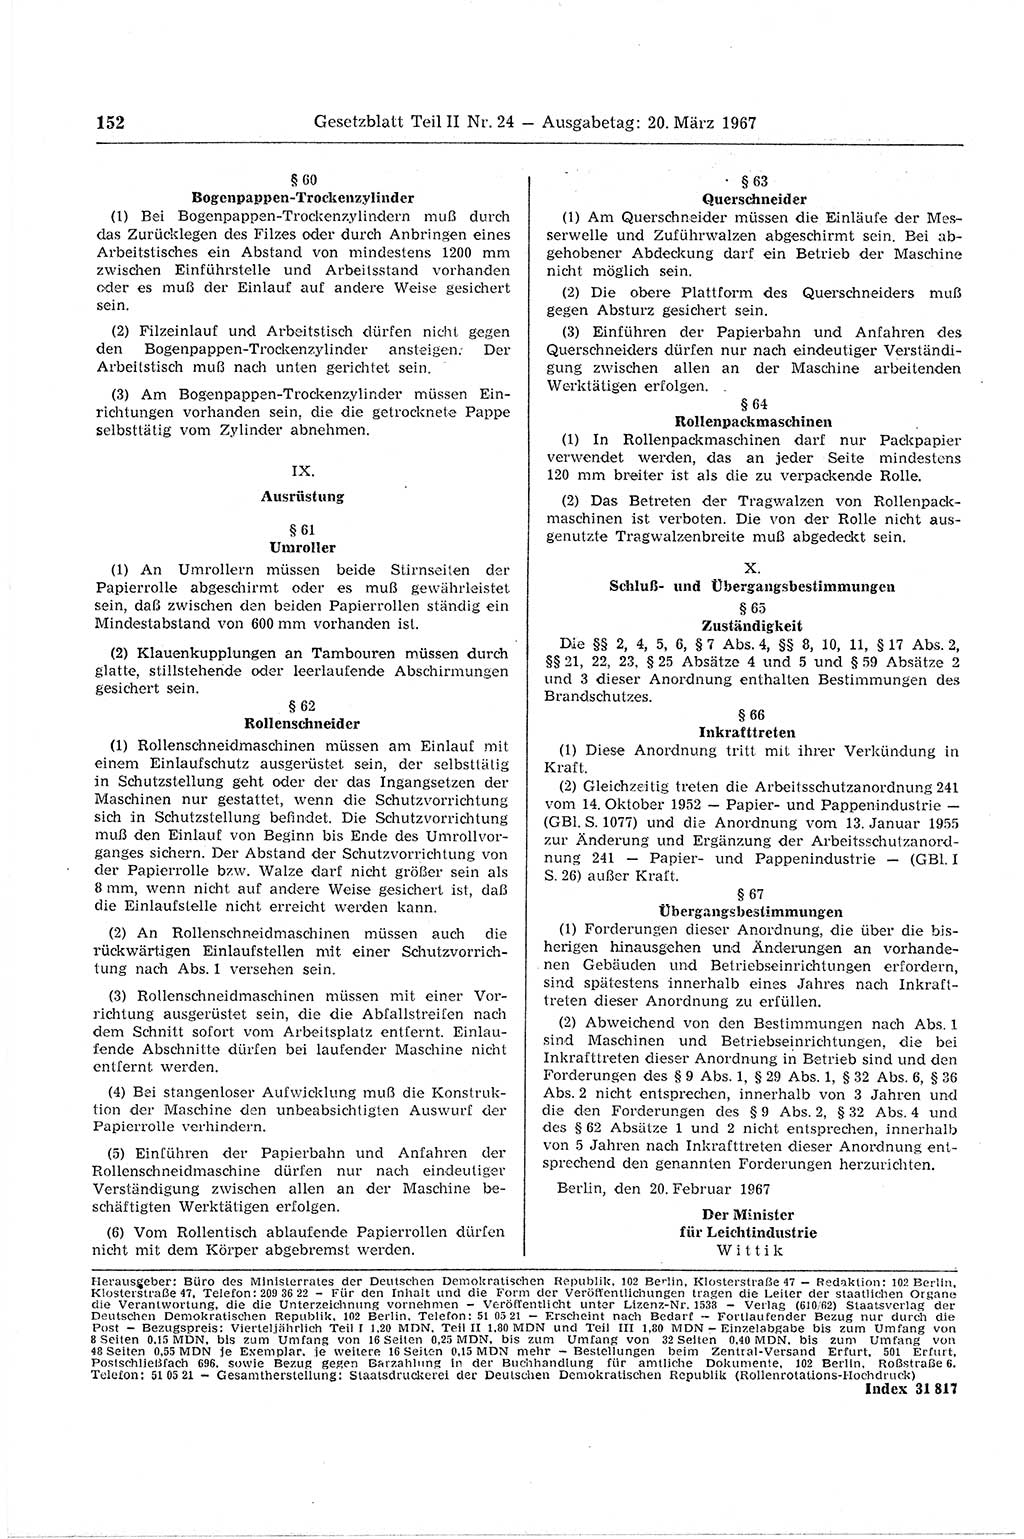 Gesetzblatt (GBl.) der Deutschen Demokratischen Republik (DDR) Teil ⅠⅠ 1967, Seite 152 (GBl. DDR ⅠⅠ 1967, S. 152)